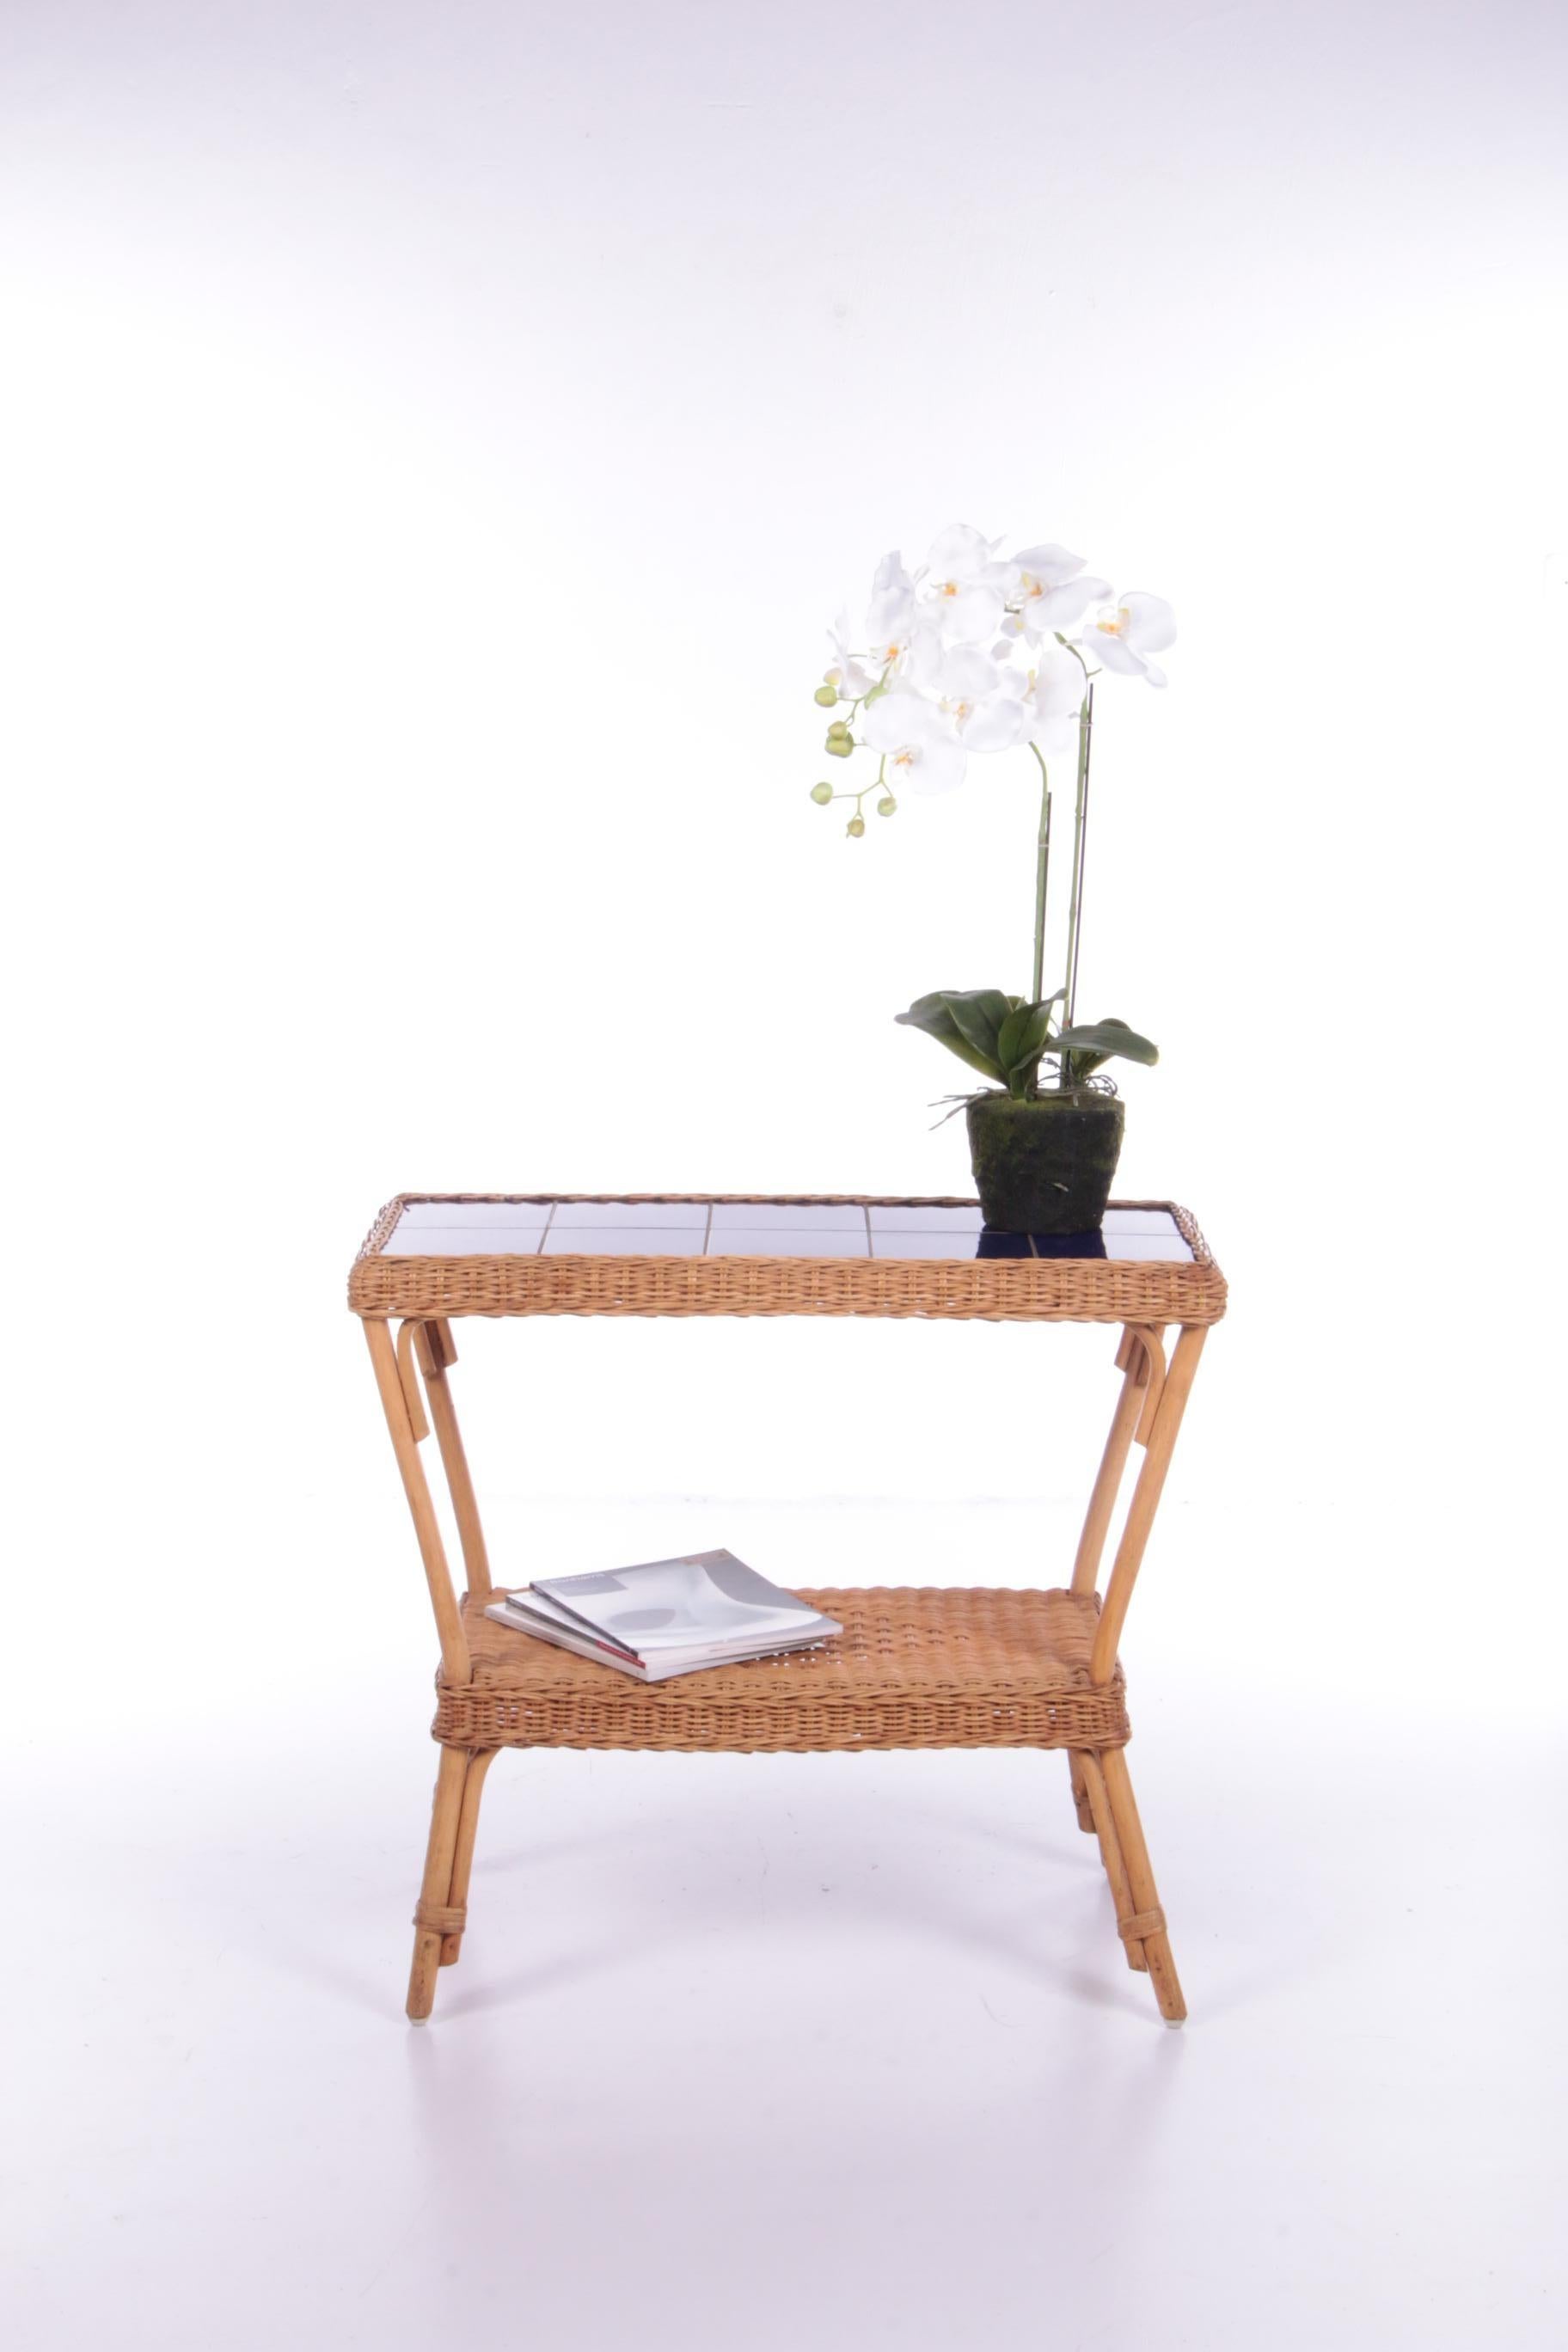 Table d'appoint vintage style bohème en bambou, 1960 France.

Magnifique table d'appoint en bambou de Bohème avec des carreaux bleus.

Très agréable à utiliser également comme table à plantes. Apportez l'atmosphère bohème dans votre maison avec